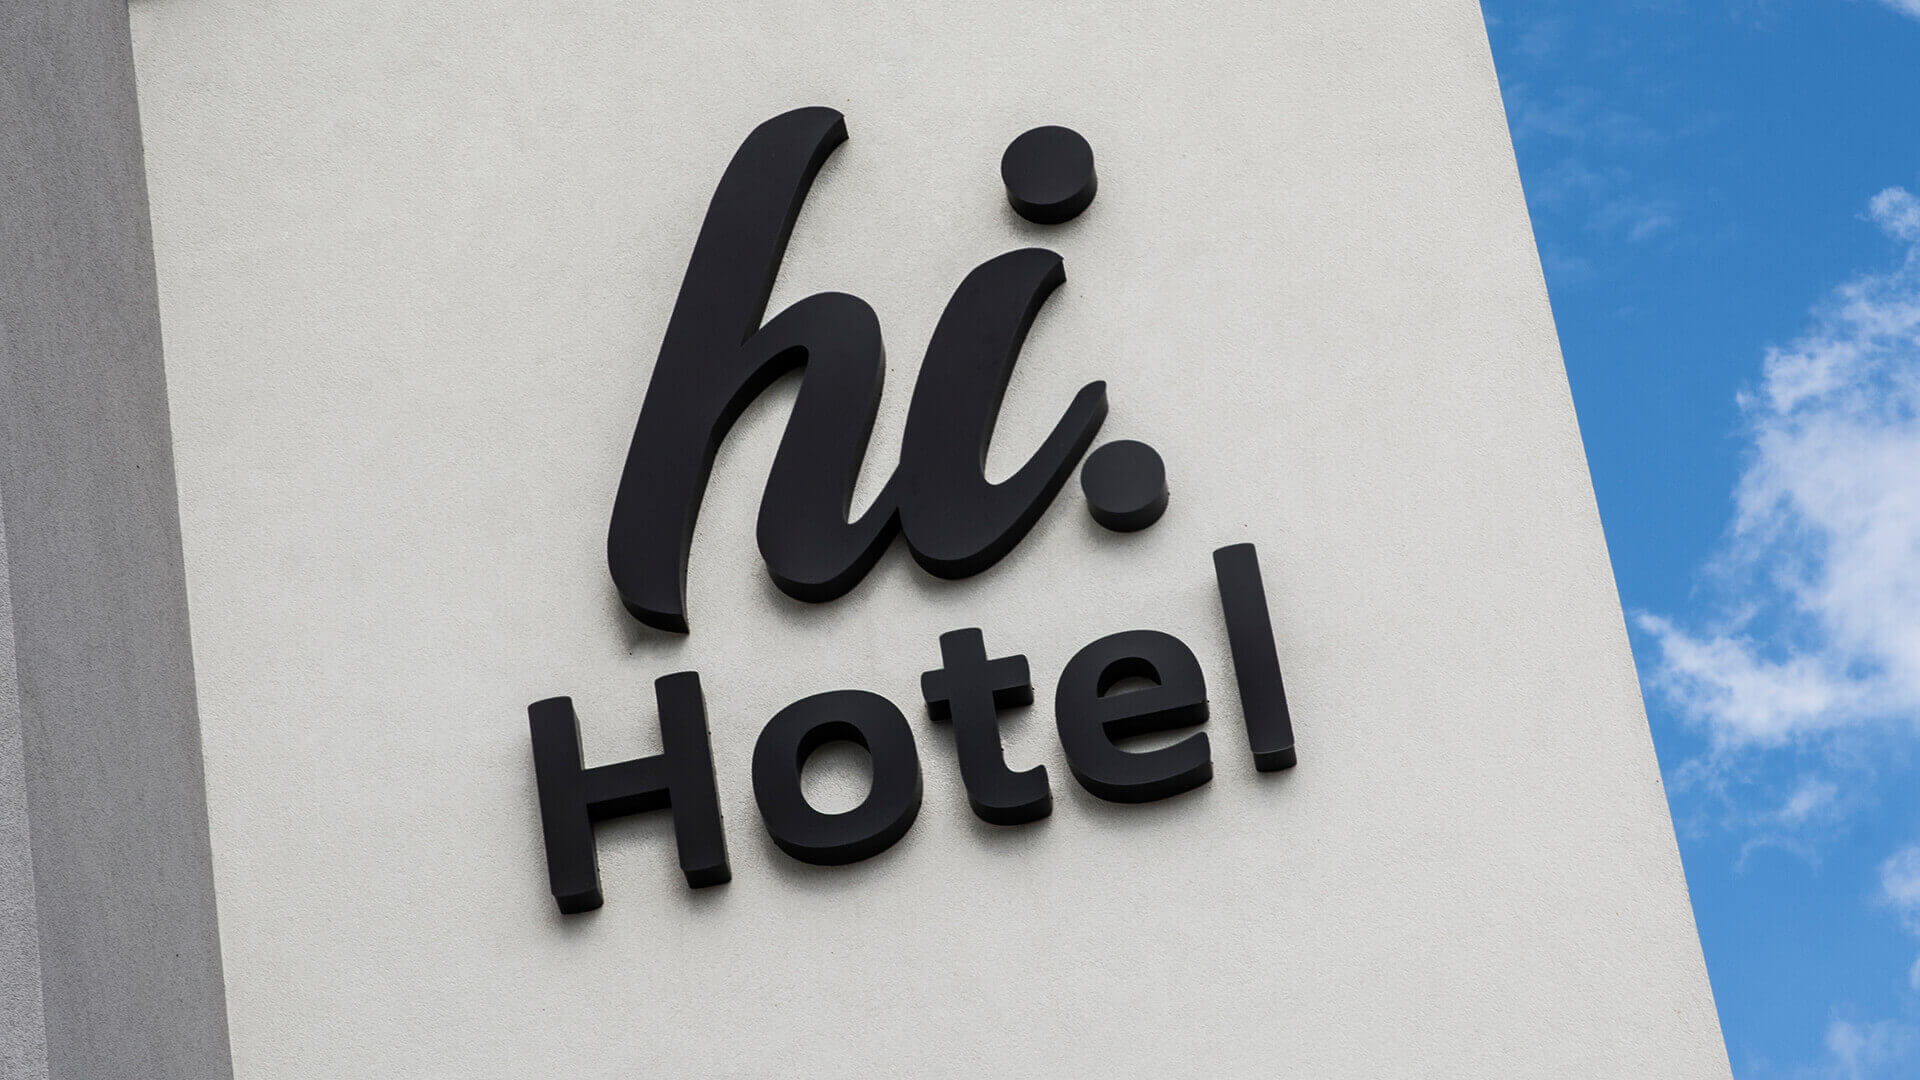 Hola hotel hihotel - hi-hotel-neón-en-la-pared-neón-detrás-del-panel-neón-de-la-luz-neón-en-la-entrada-neón-en-la-altura-neón-líneas-neón-color-blanco-logo-de-la-firma-neón-en-concreto-gdansk-lotnisko (4)